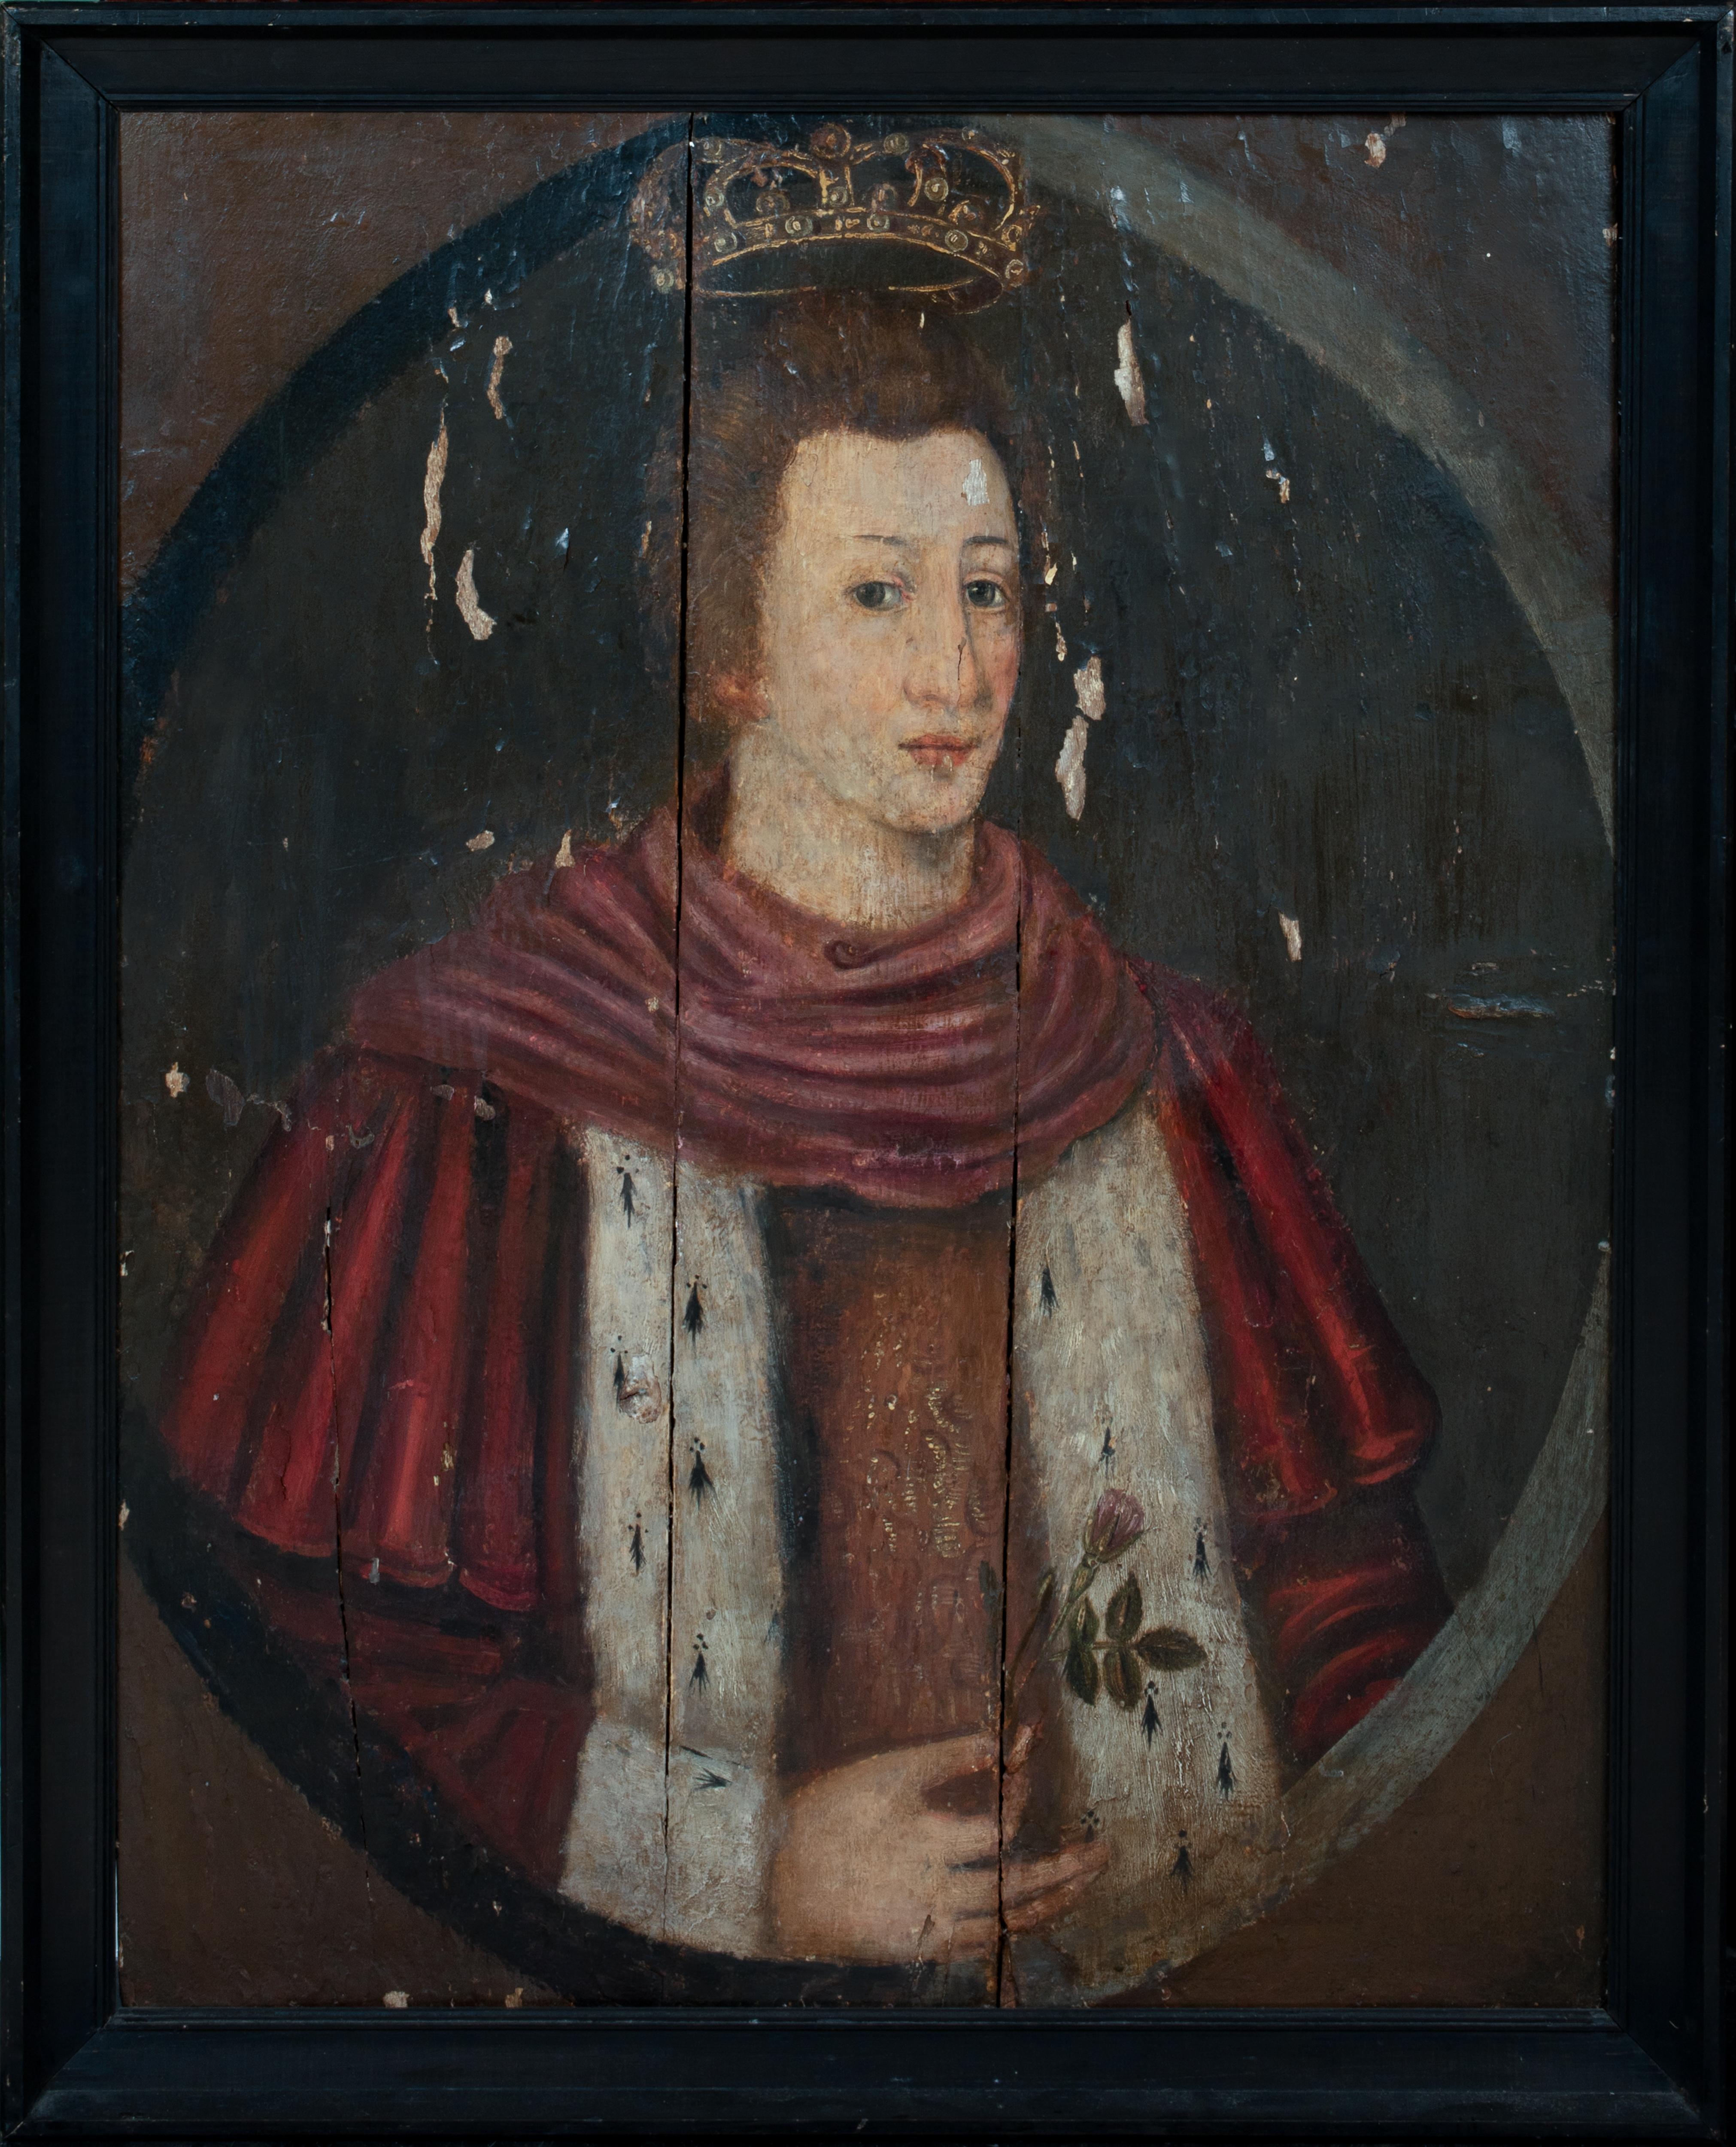 Unknown Portrait Painting – Porträt von König Edward VI (1537-1553) als Prinz von Wales, 16. Jahrhundert 